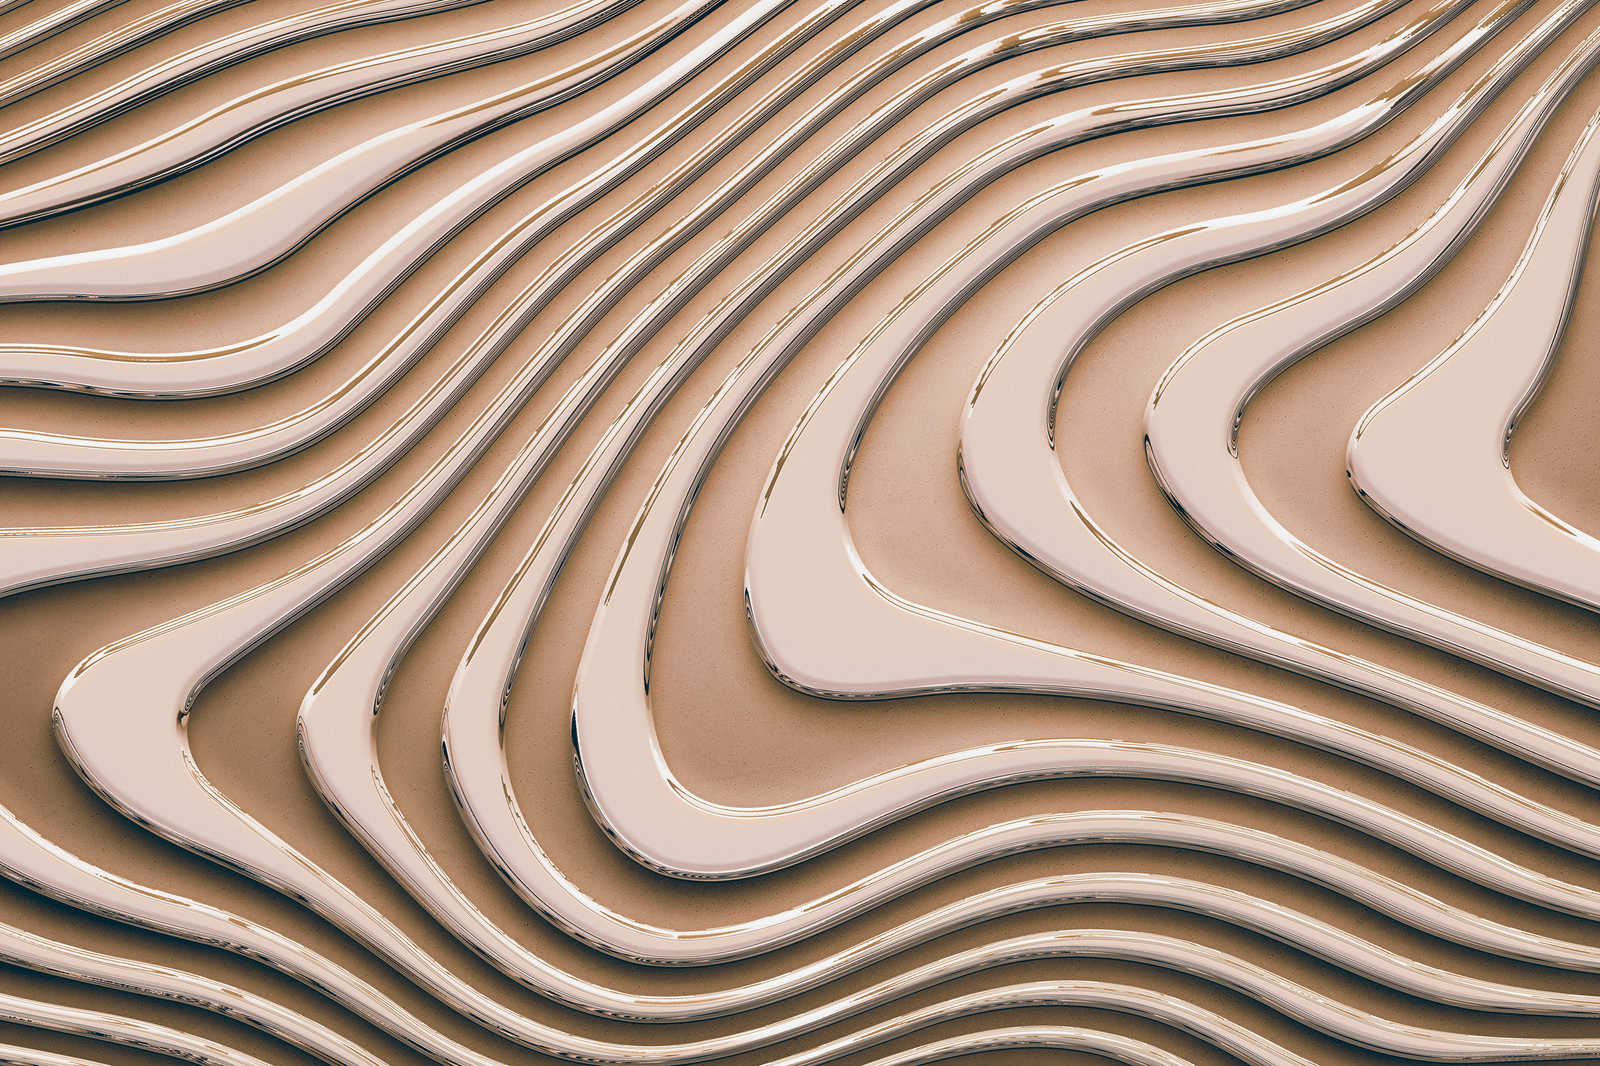             Leinwandbild mit wellenförmigen Linien und Schatten | beige, braun – 0,90 m x 0,60 m
        